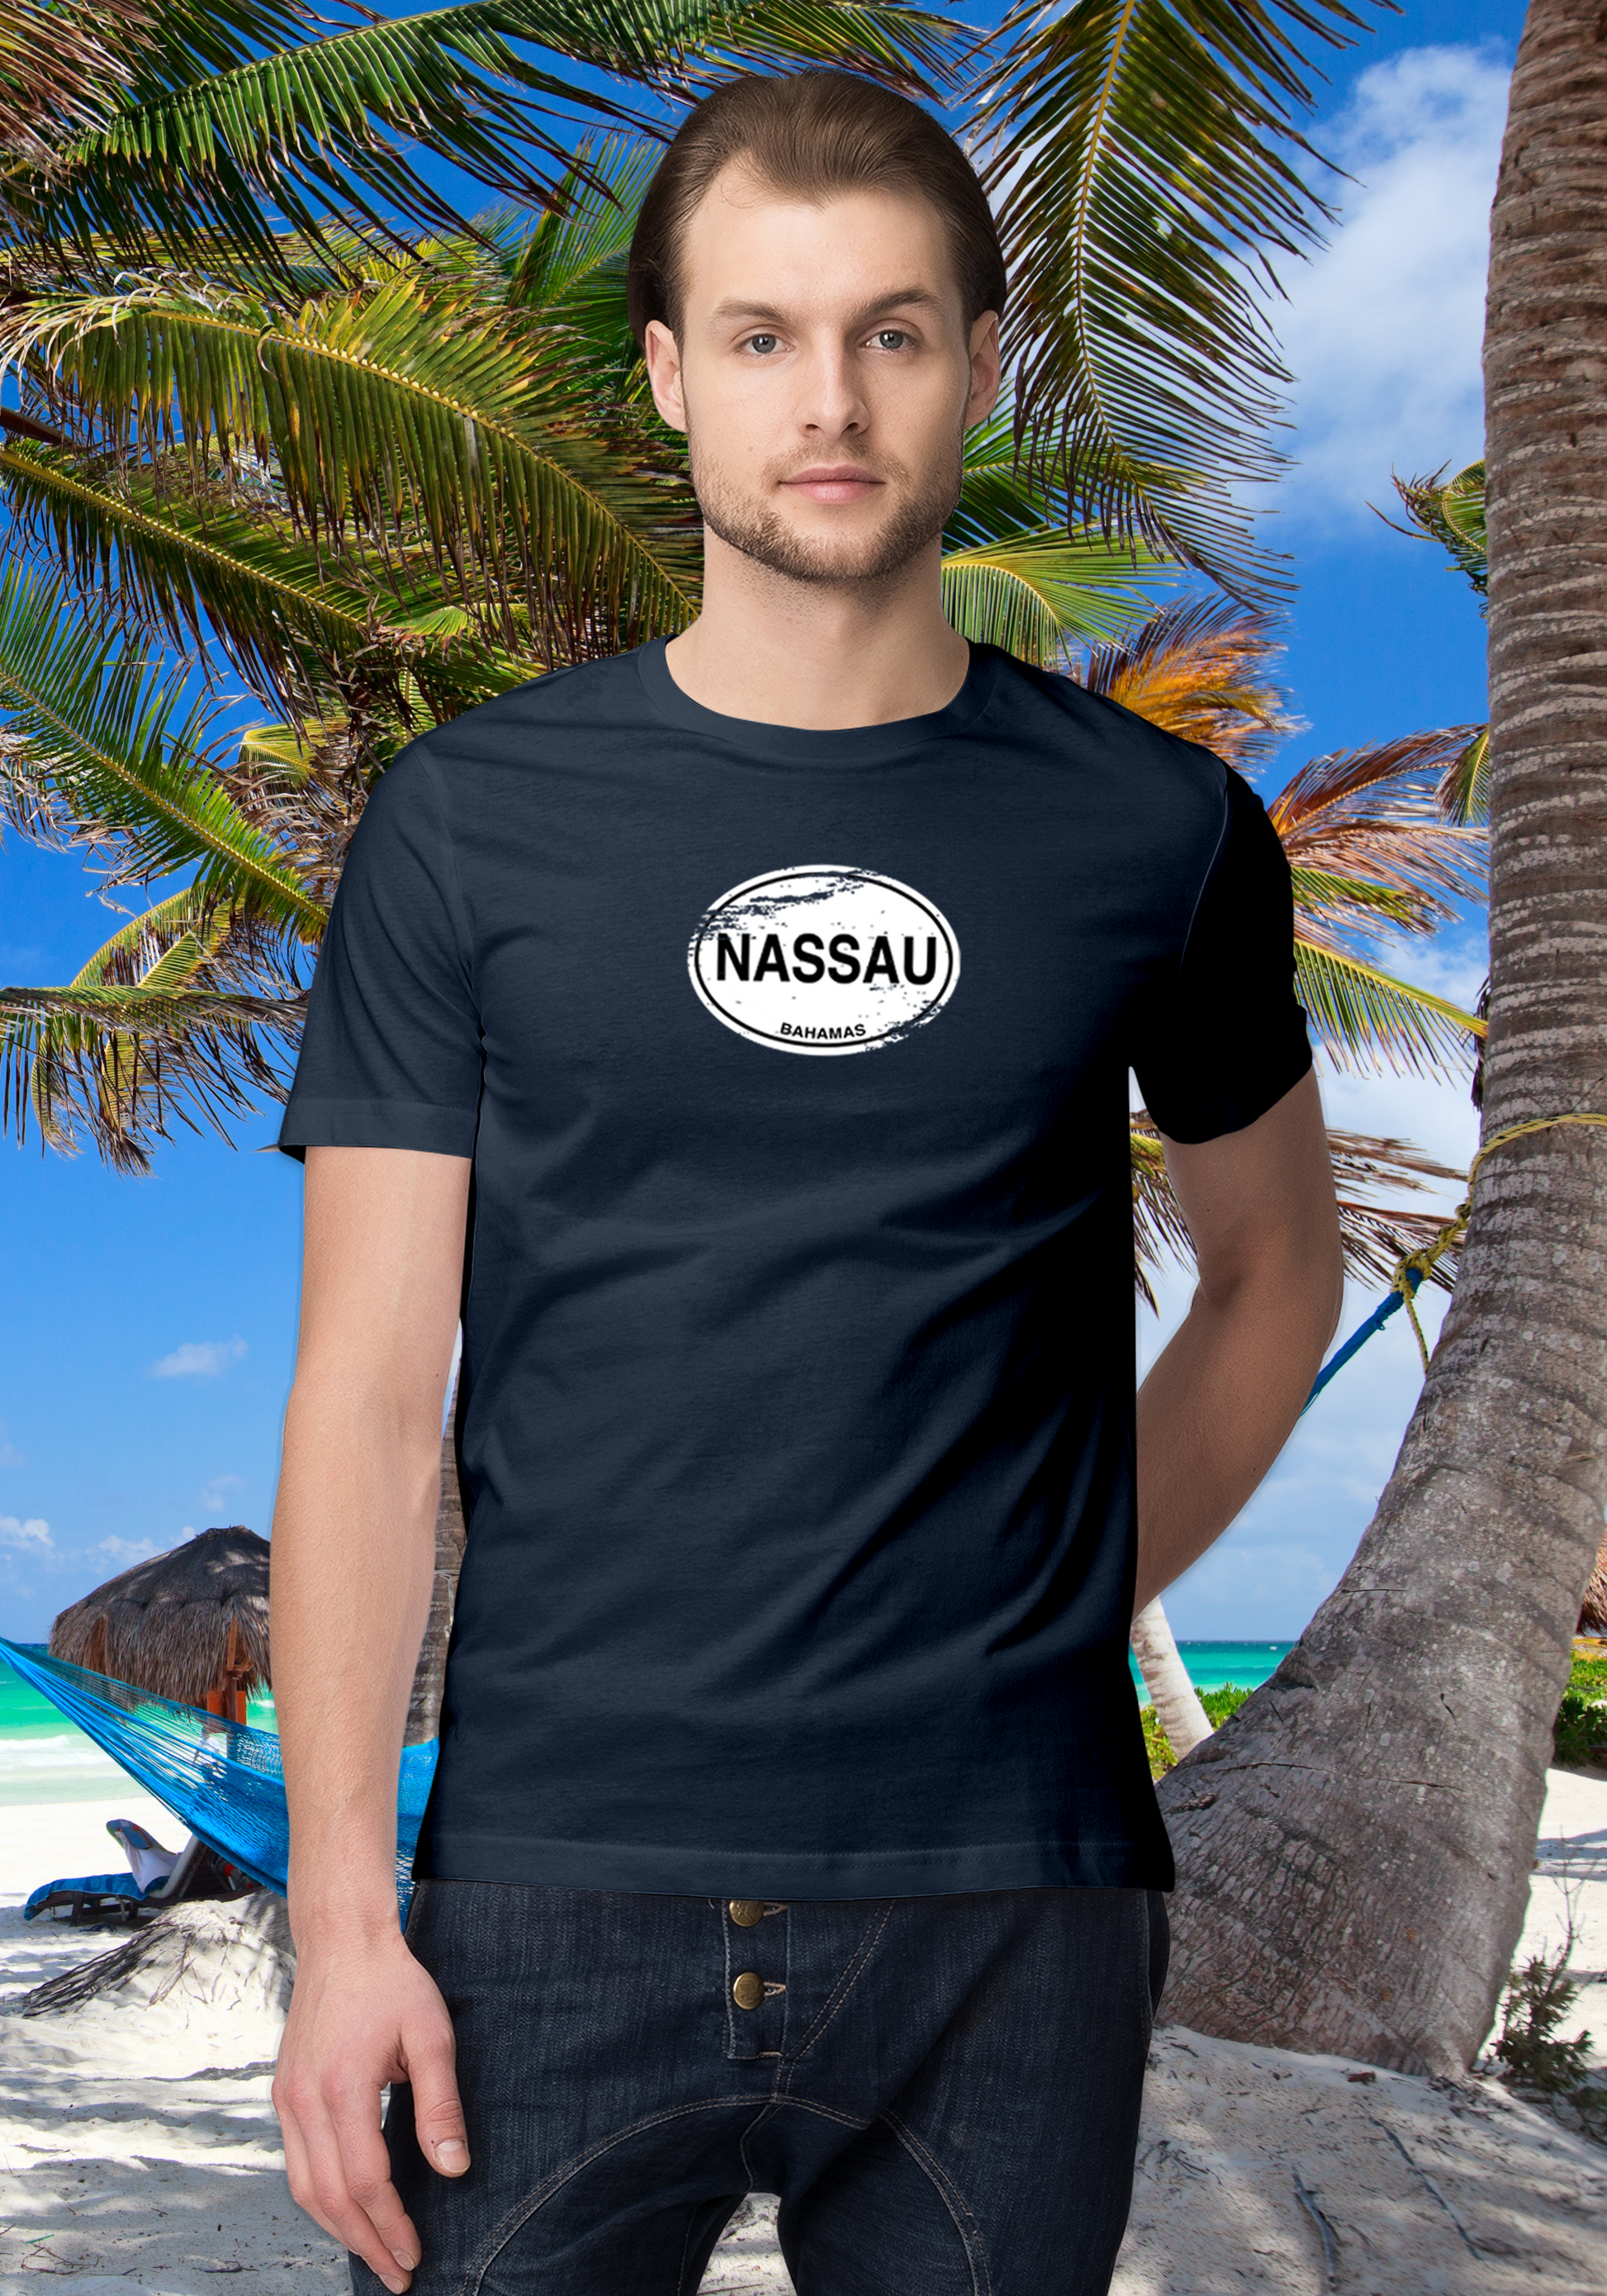 Nassau Men's Classic T-Shirt Souvenirs - My Destination Location